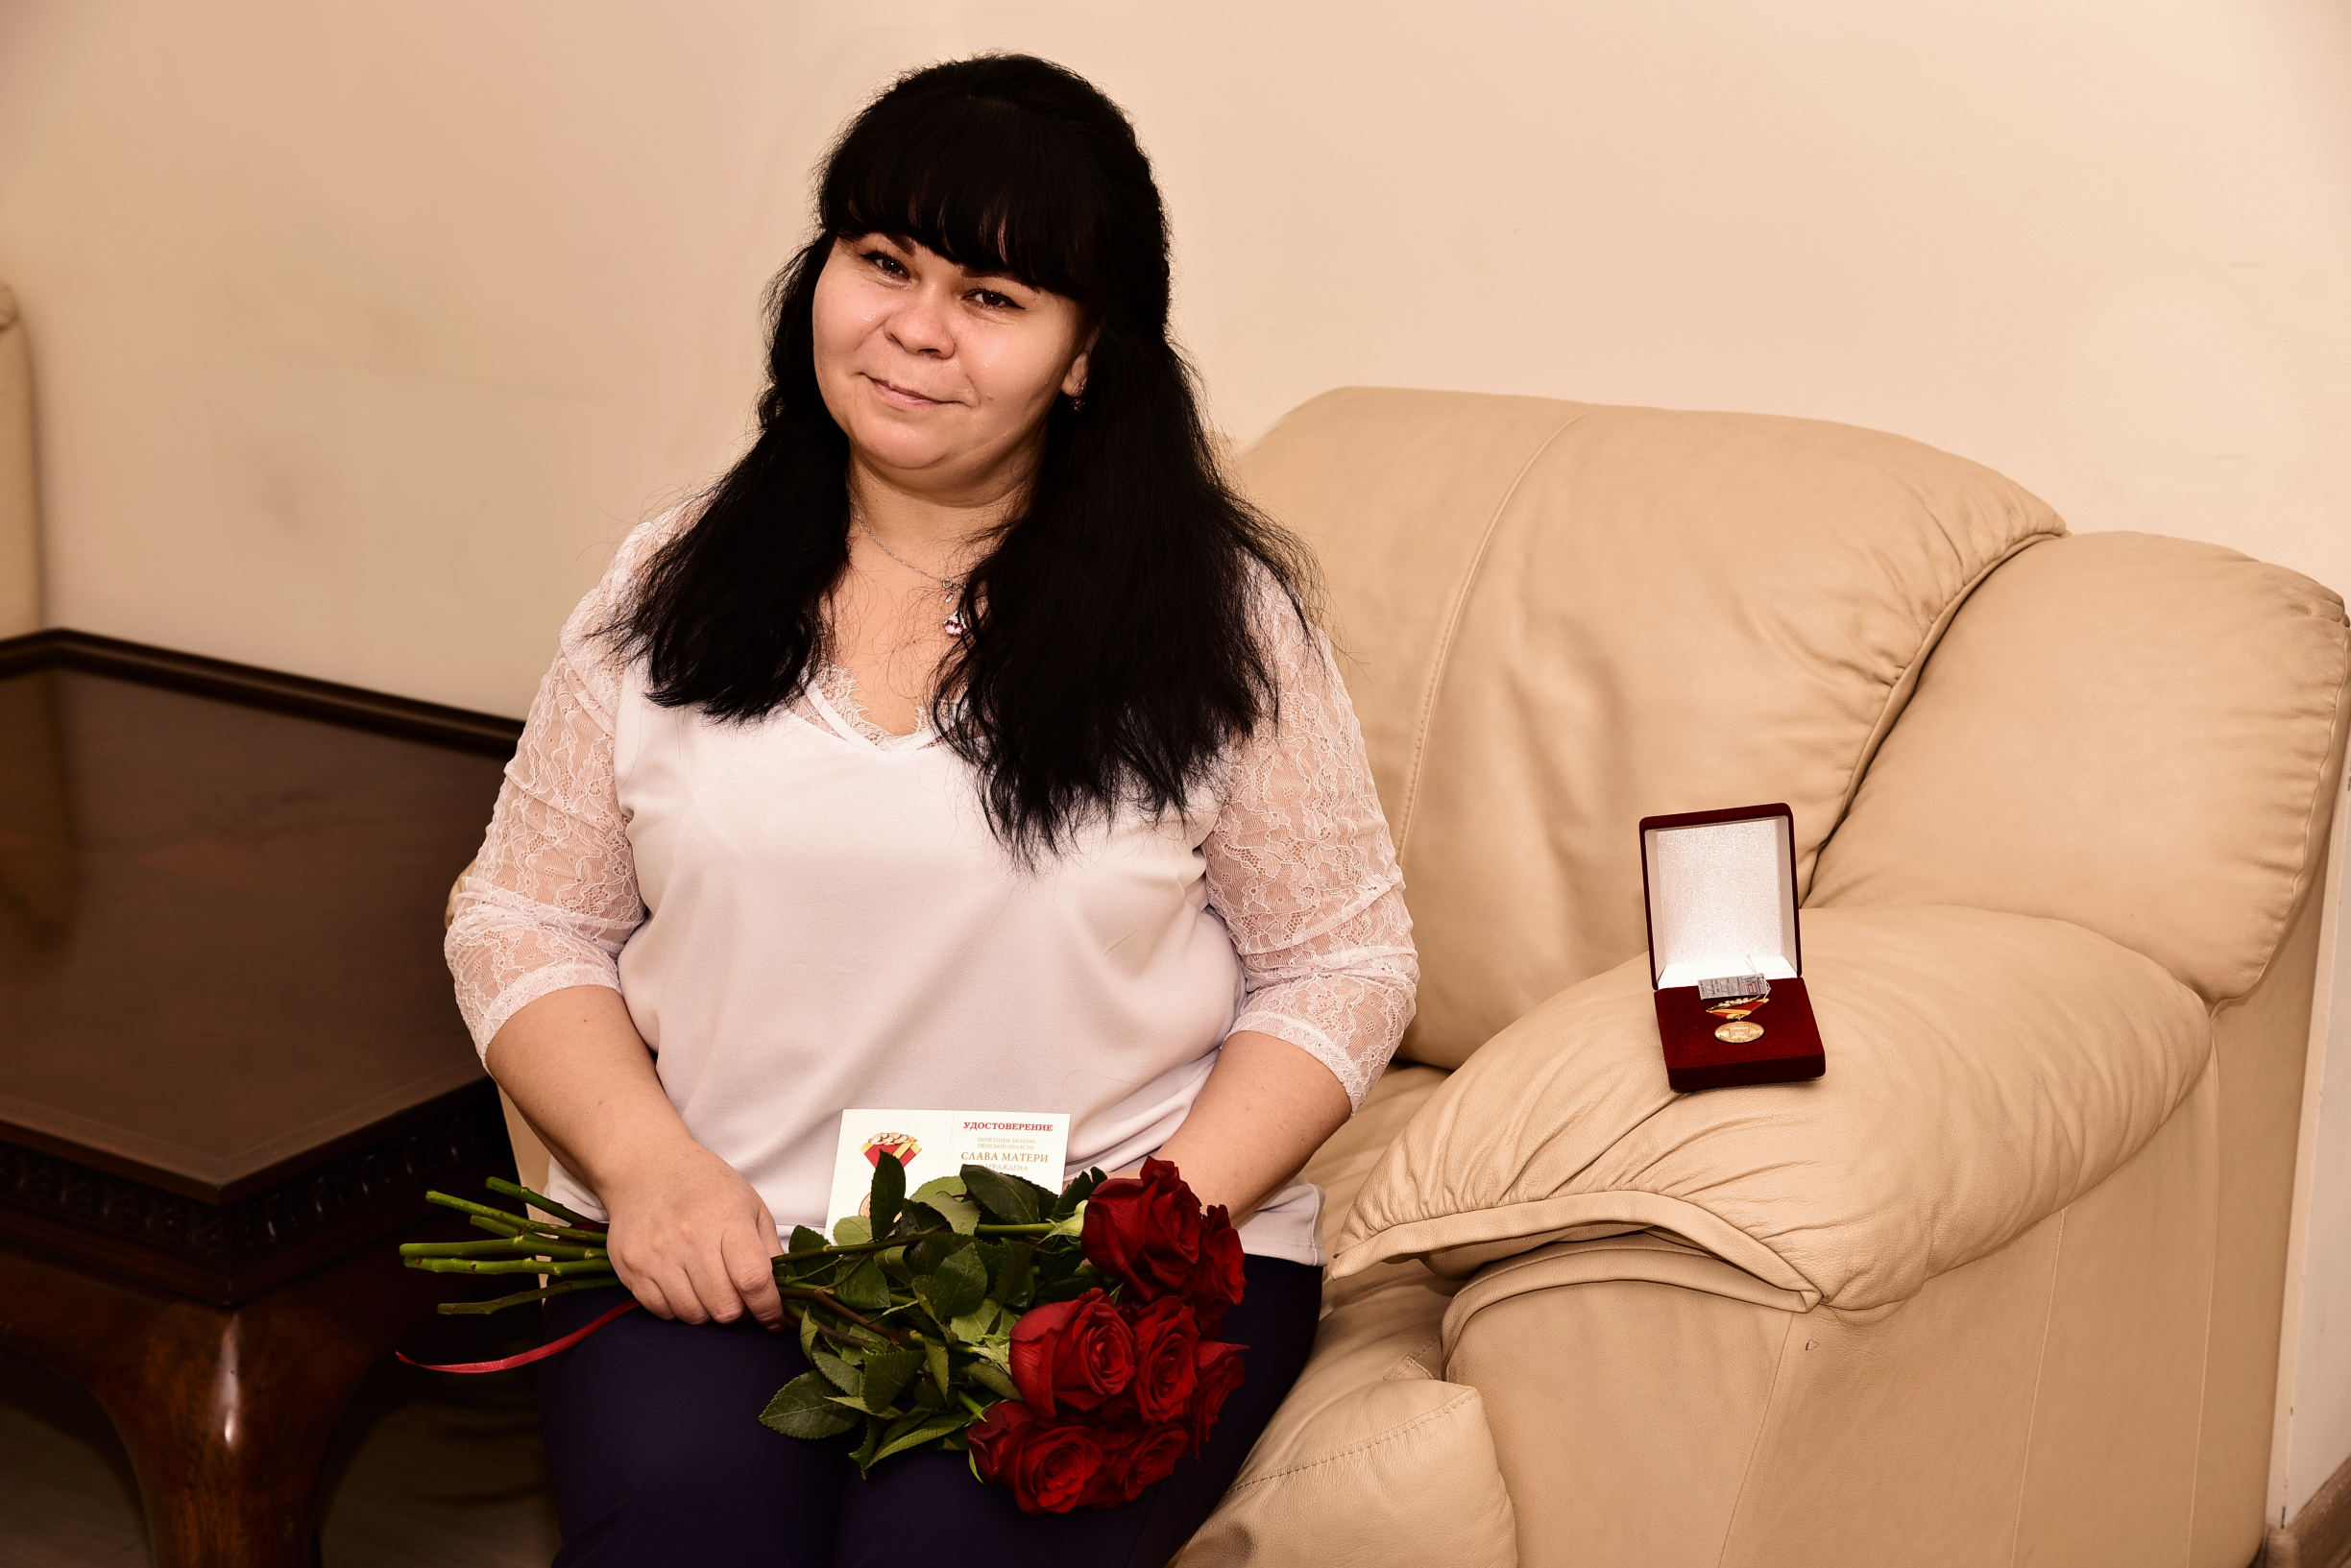 Мамы улыбаются: топ главных подарков для женщин от Тверской области